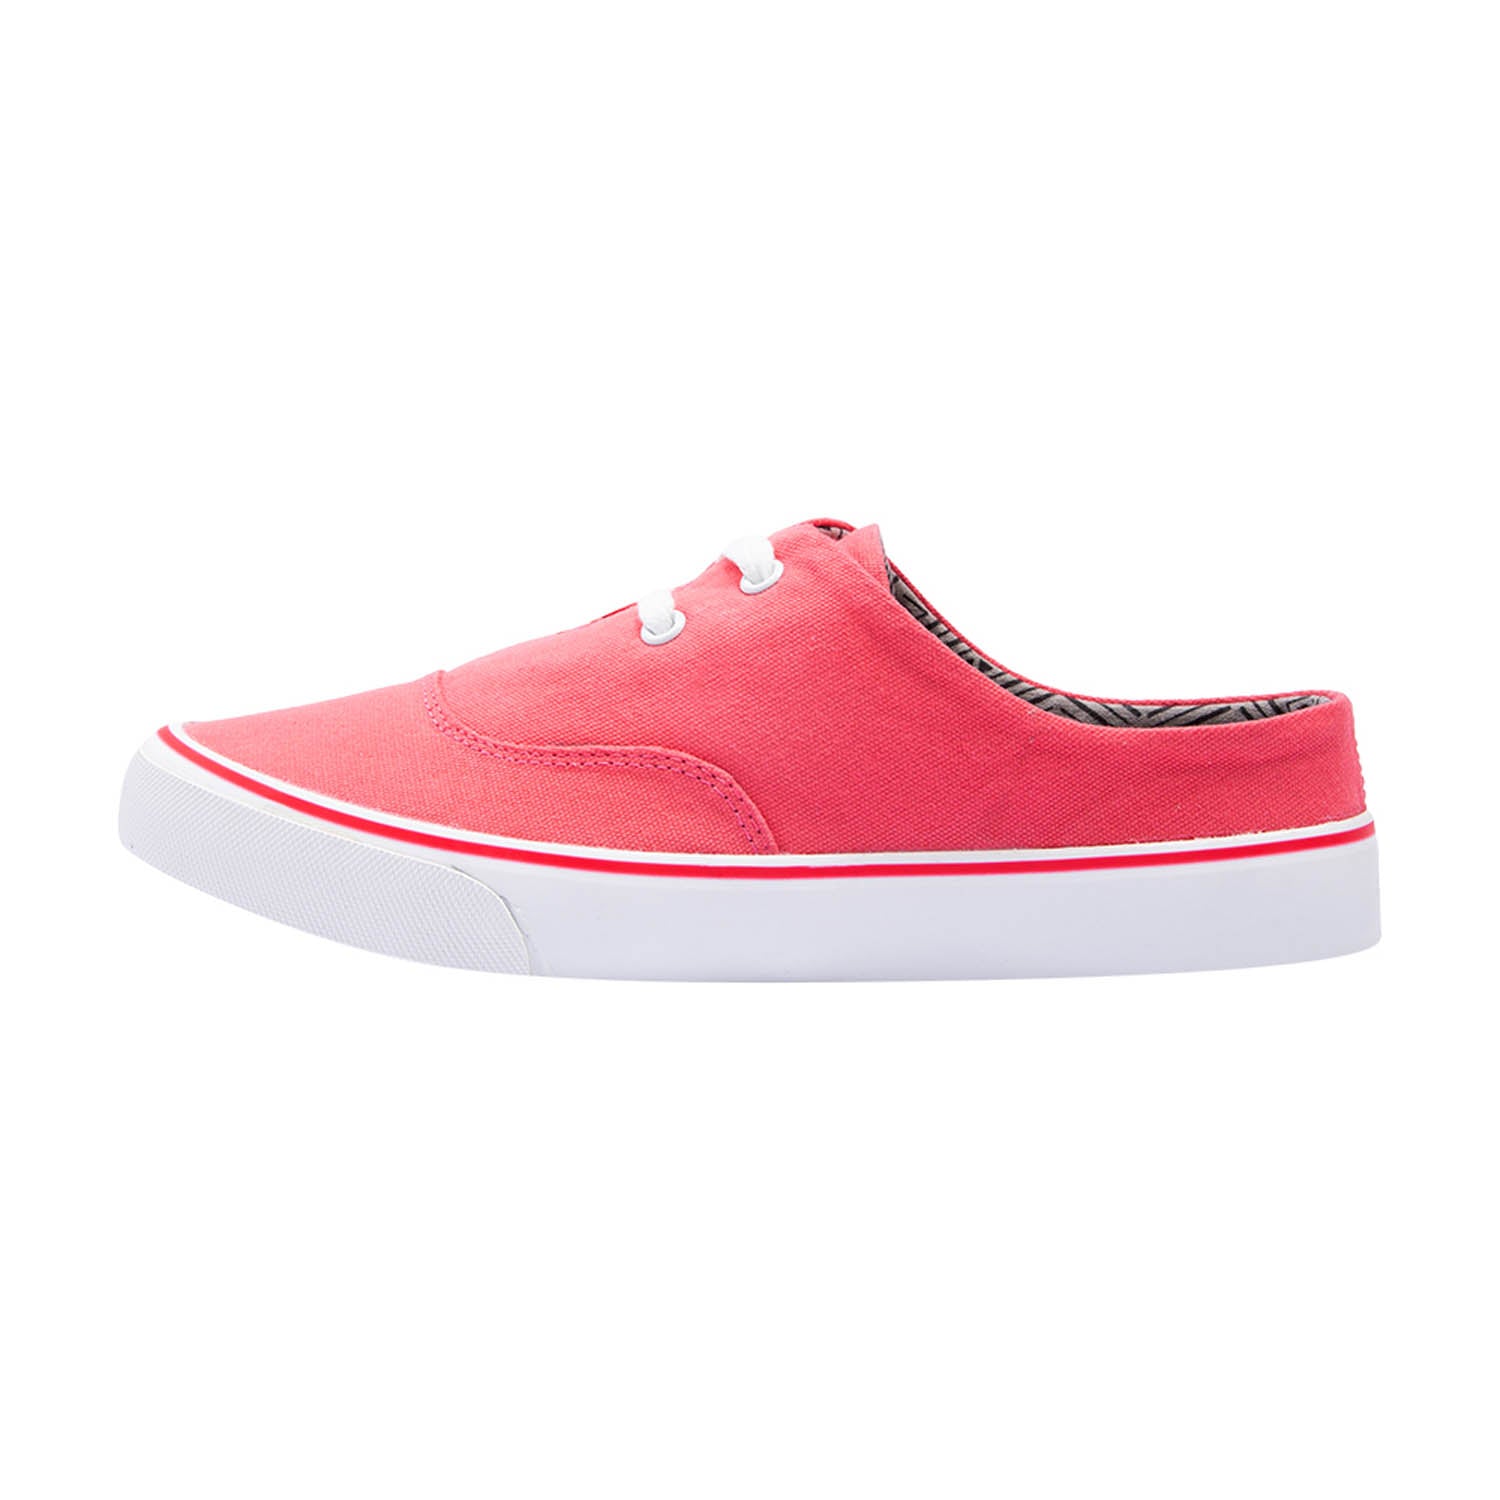 Eeken Sneakers For Women (Red)